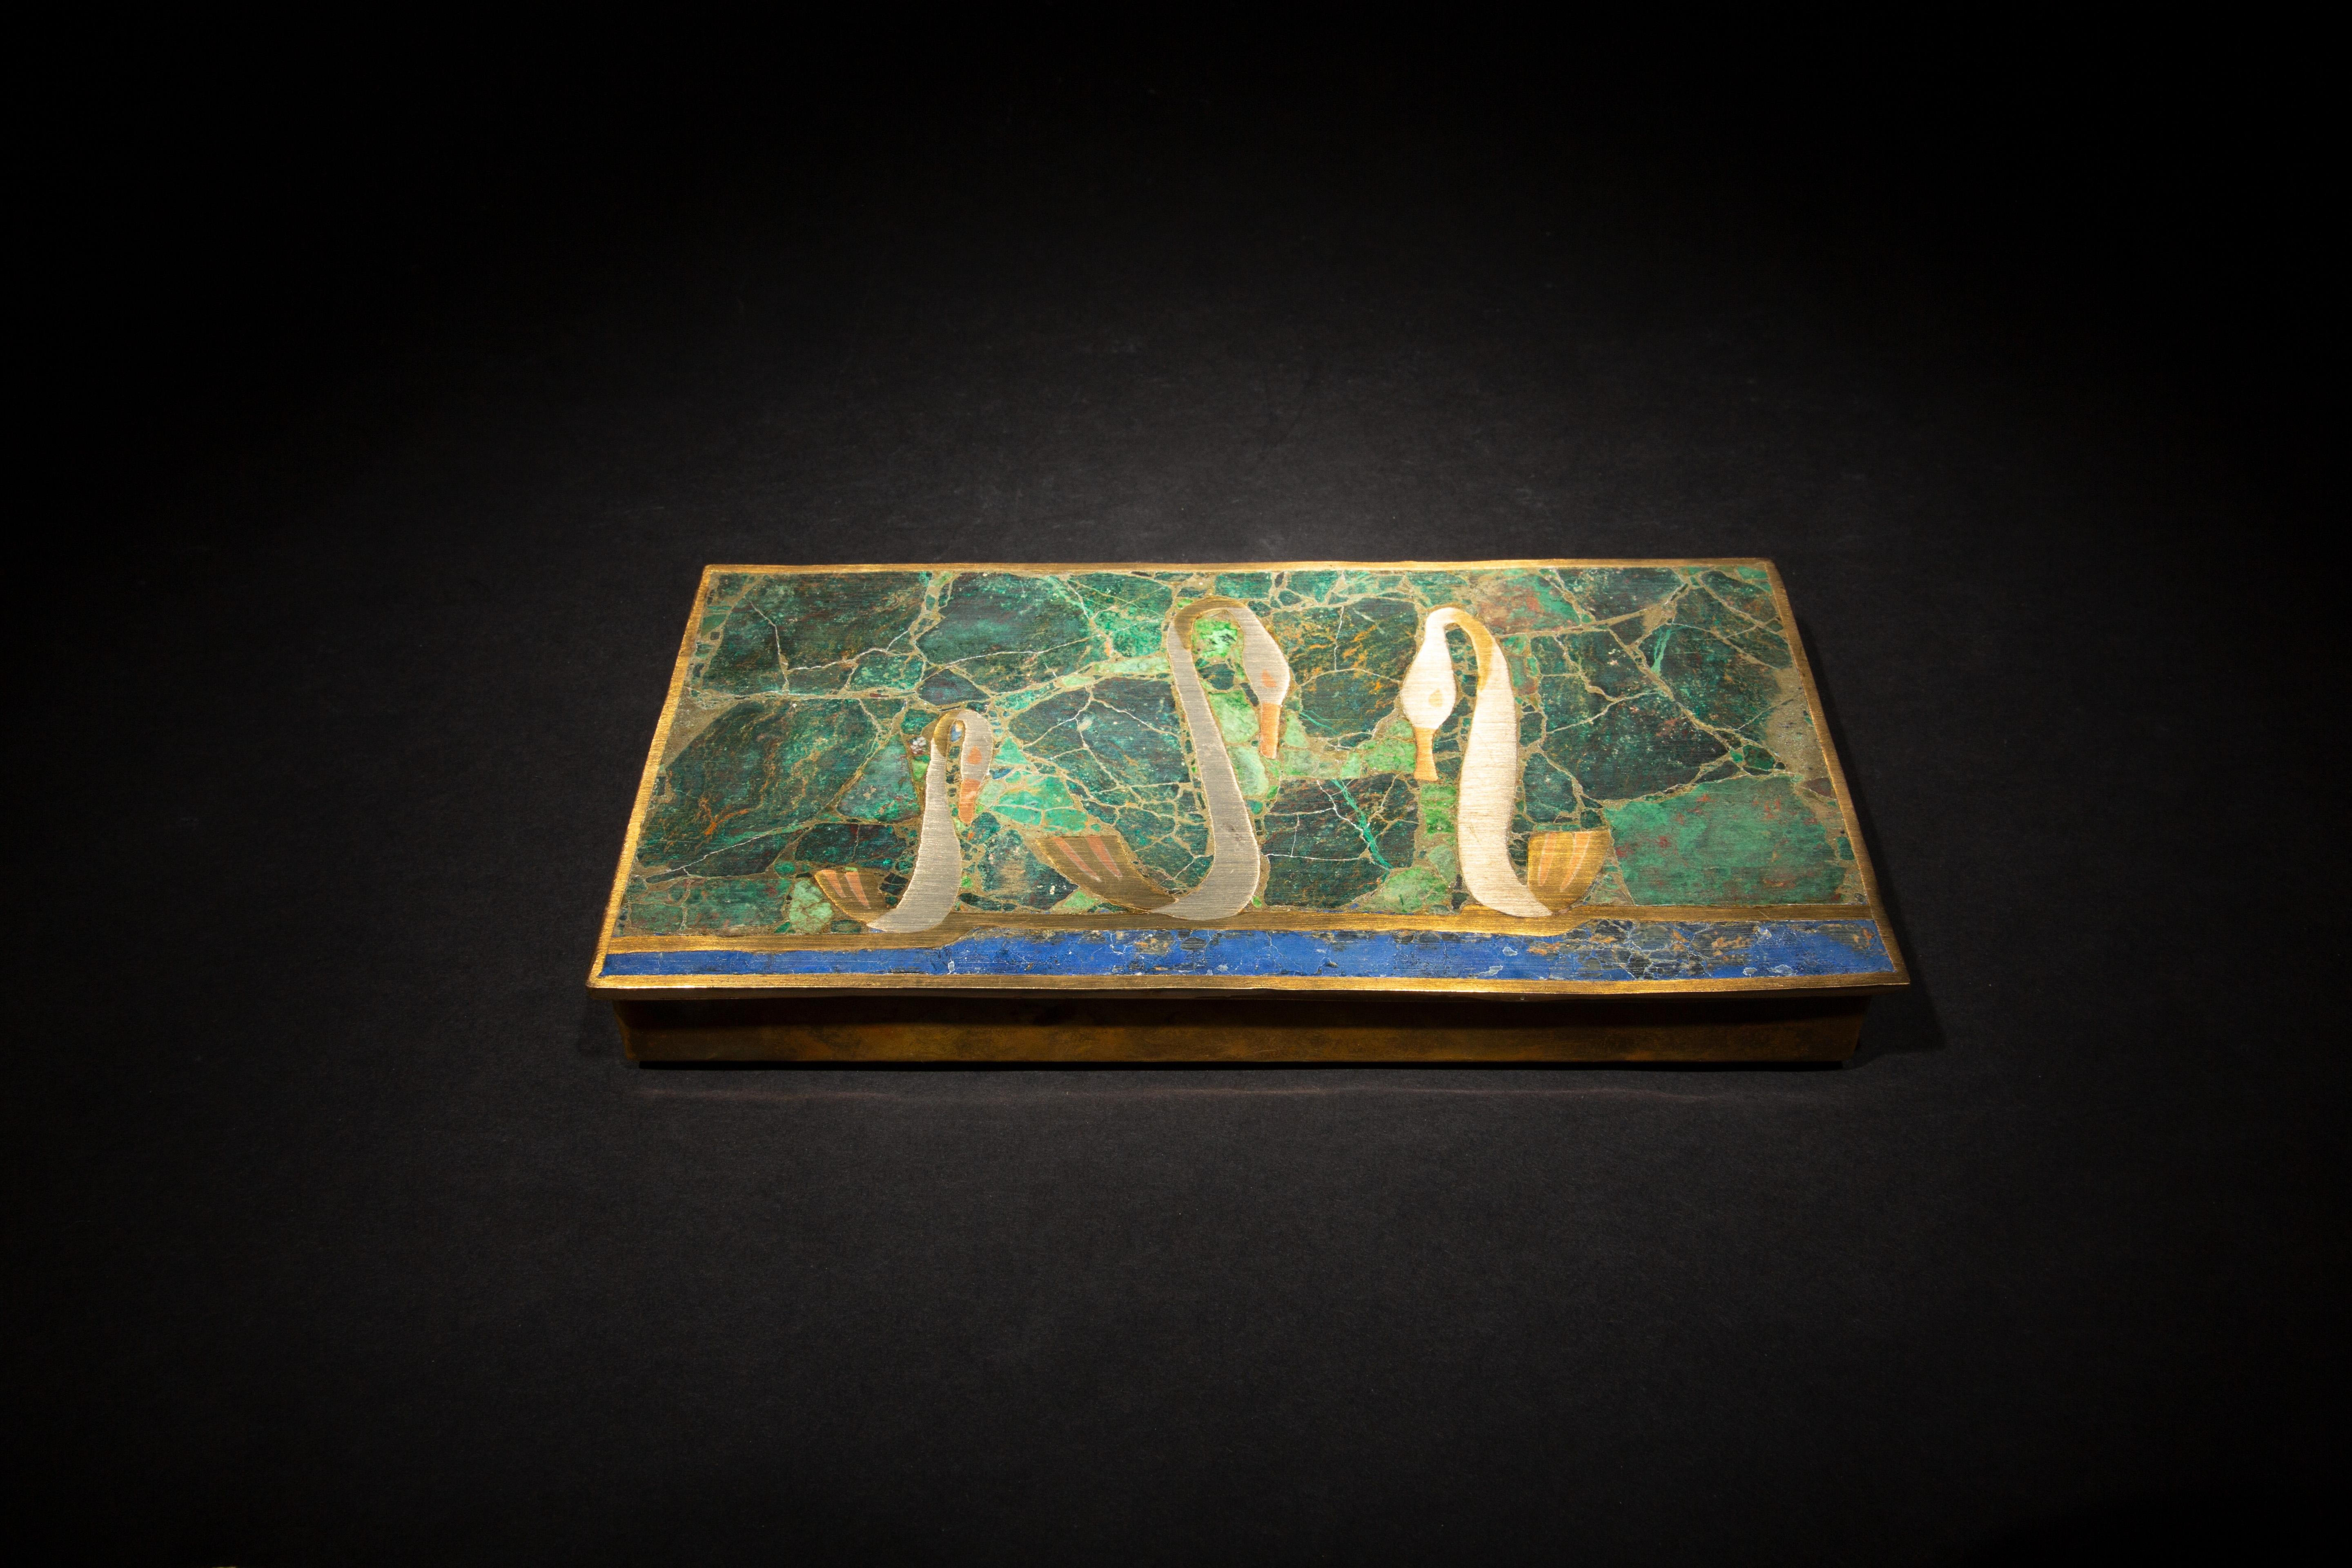 Diese Intarsienschatulle aus der Mitte des Jahrhunderts ist ein Meisterwerk des Designs und der Handwerkskunst, das eine exquisite Mischung aus Malachit, Chrysokoll und Lapislazuli aufweist. Das leuchtende Grün des Malachits, das ruhige Blau des